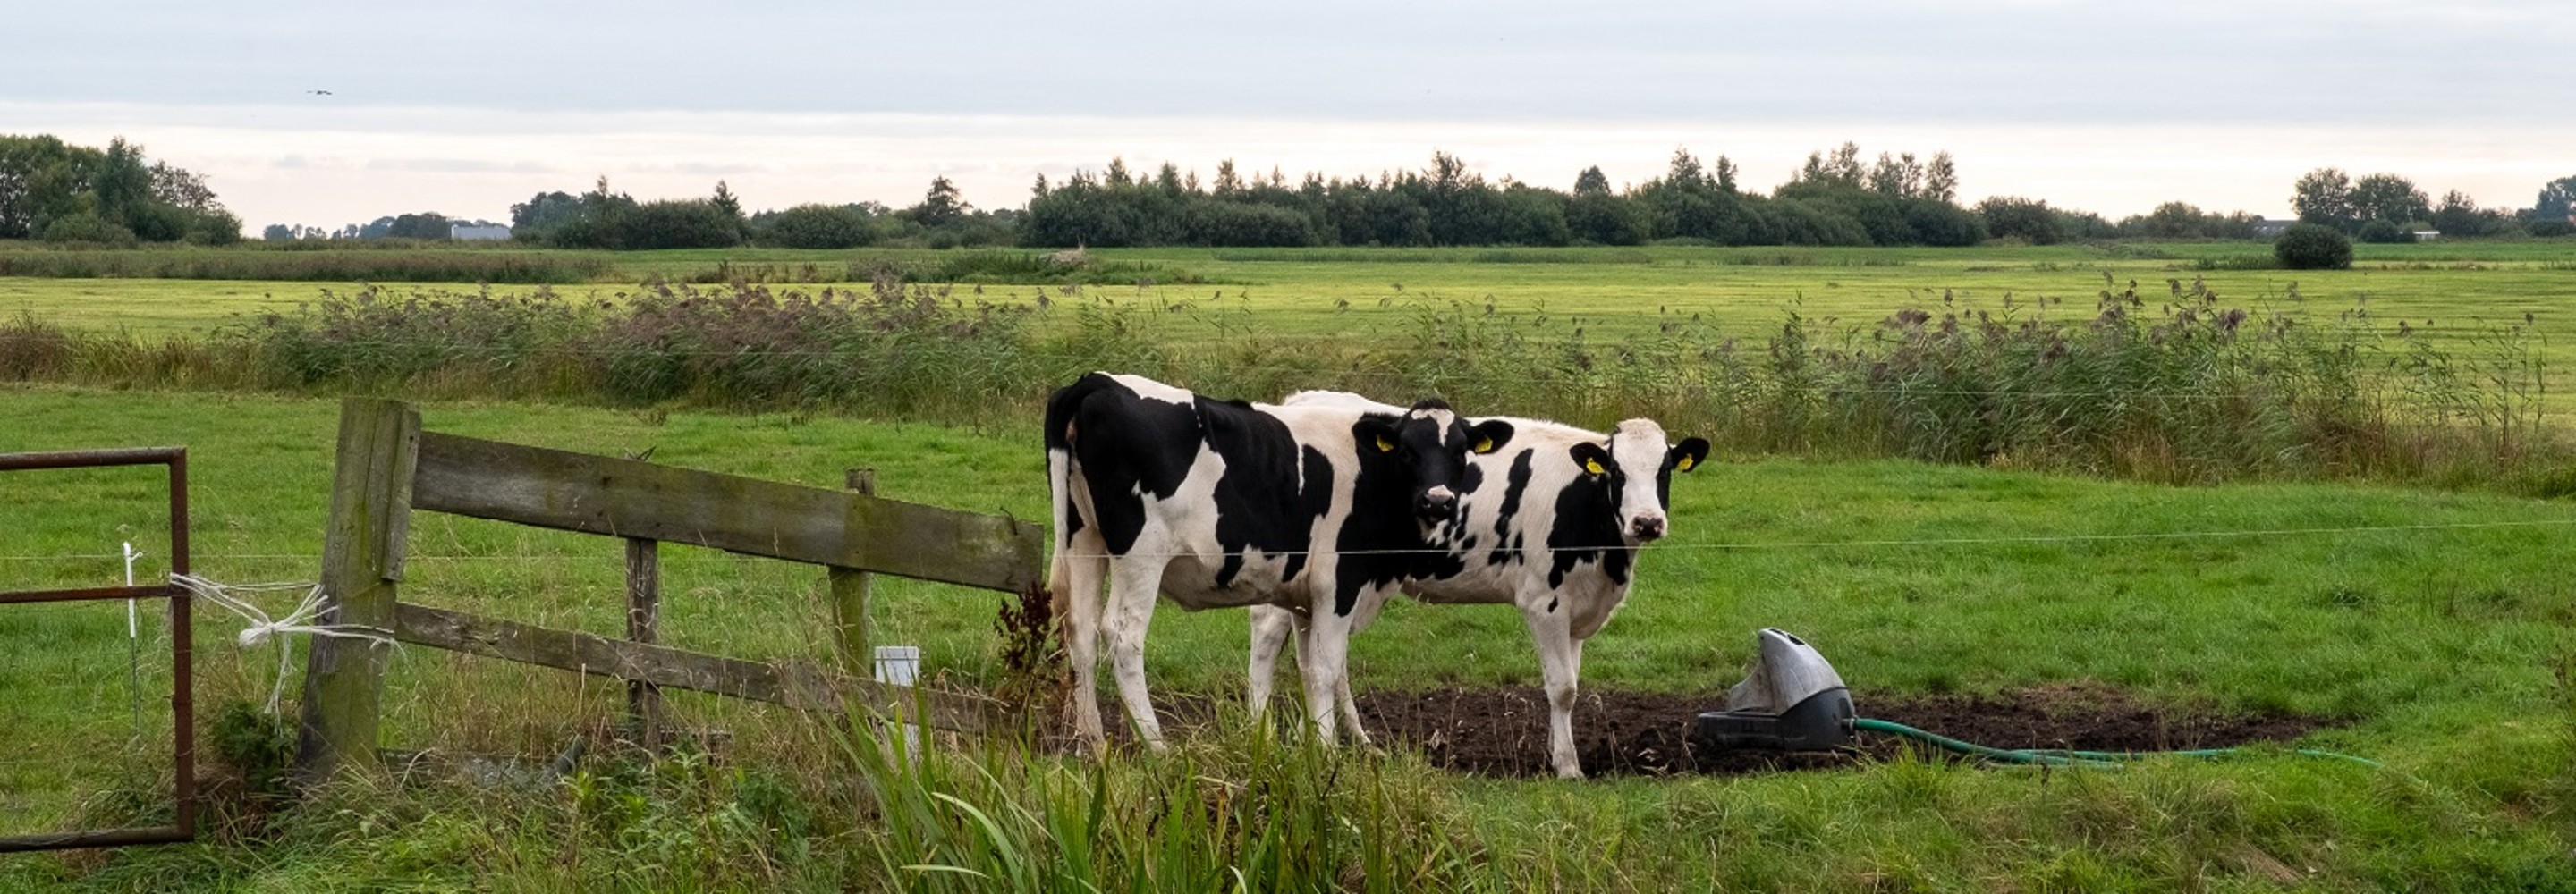 Foto van twee koeien in een weiland